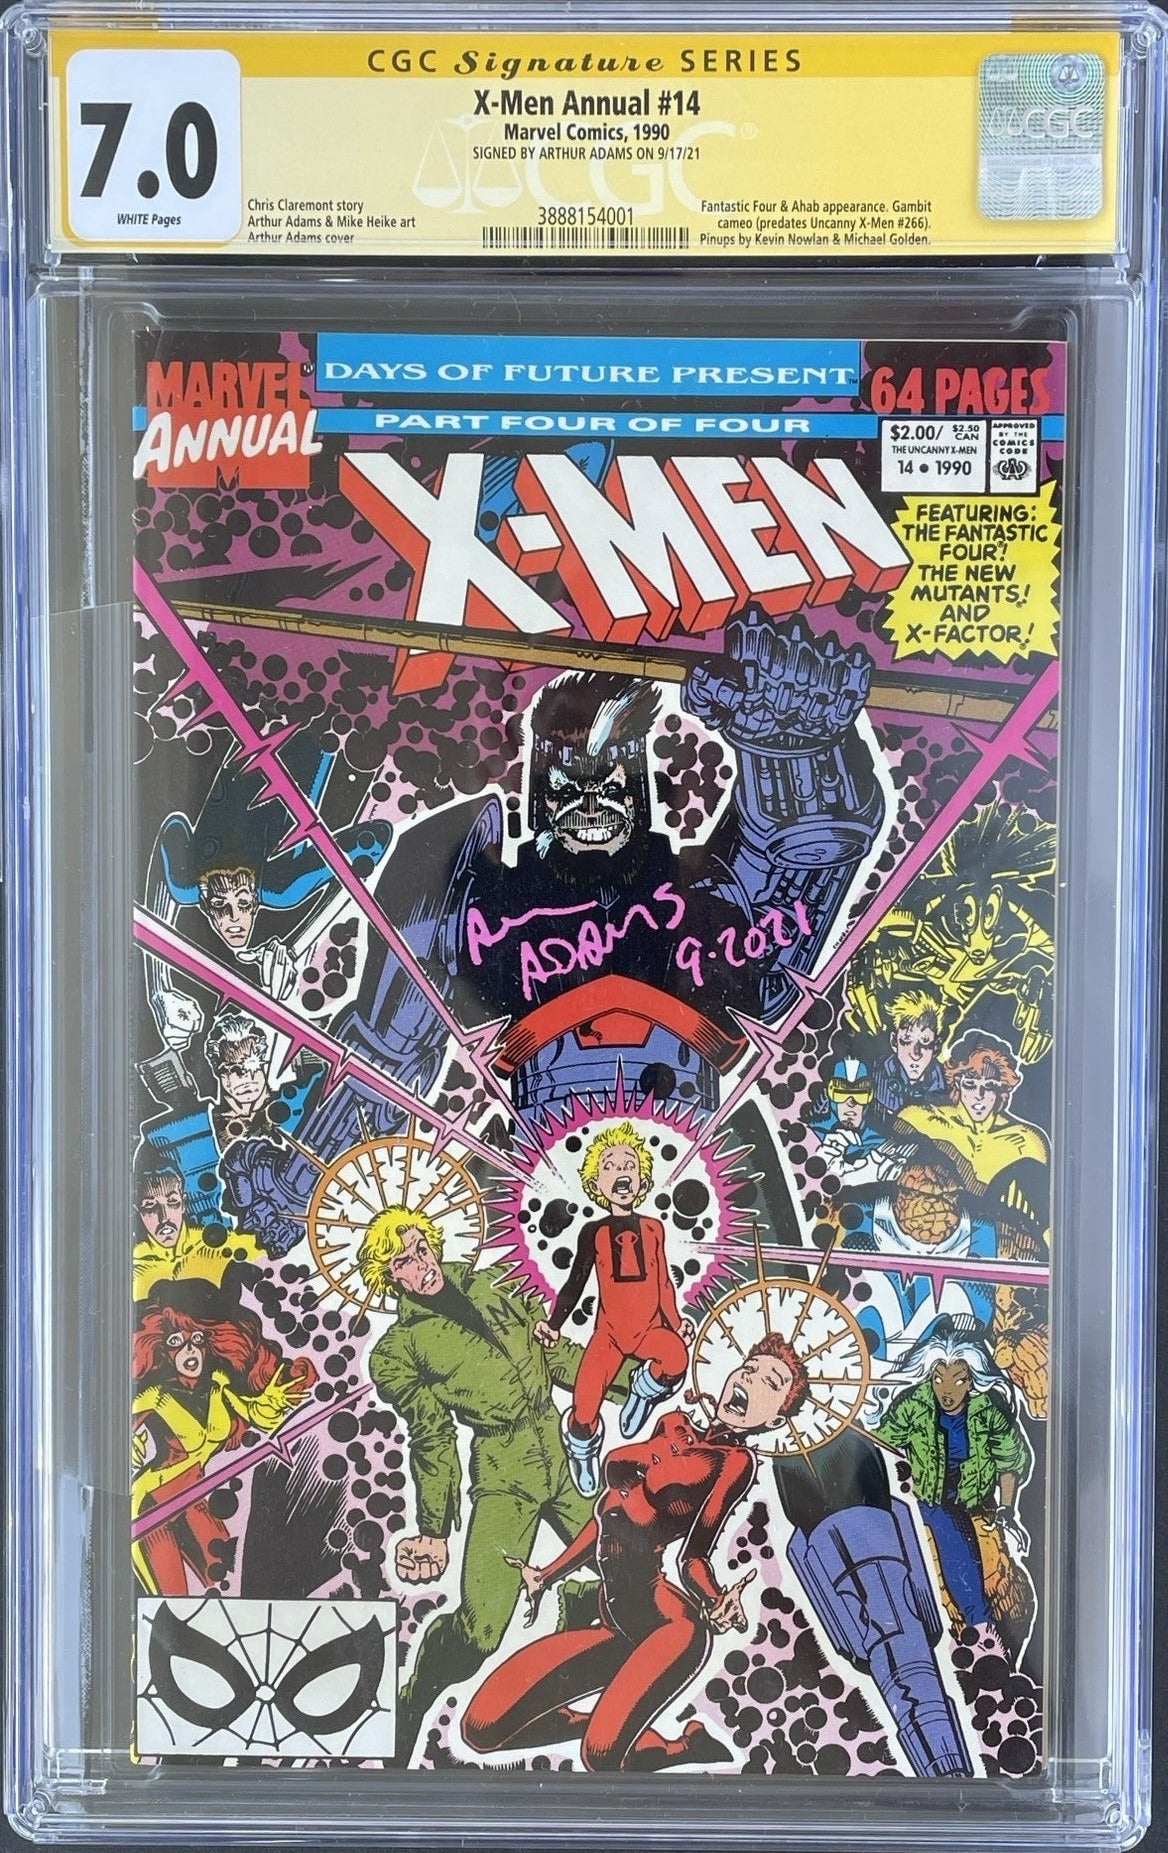 CGC X-Men Annual #14 - Signature Series (7.0)